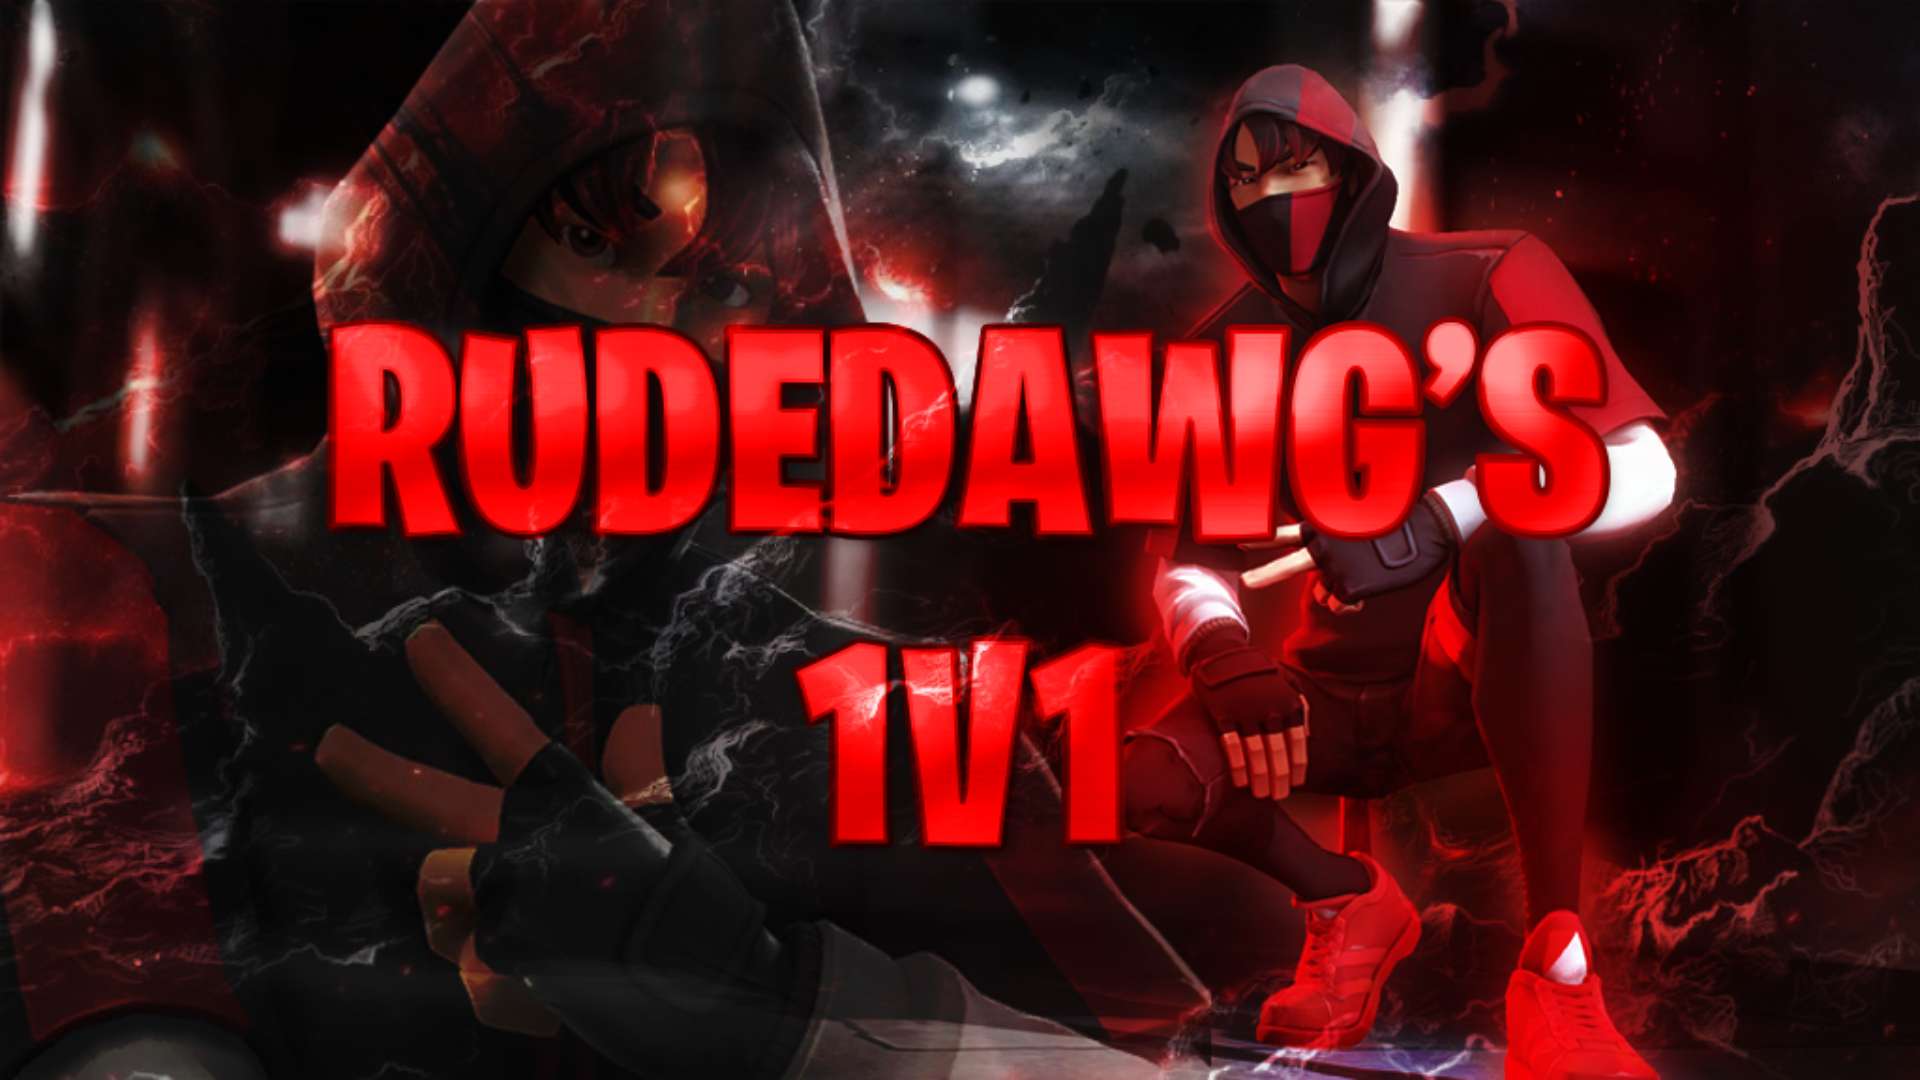 RUDEDAWG'S 1V1 image 2